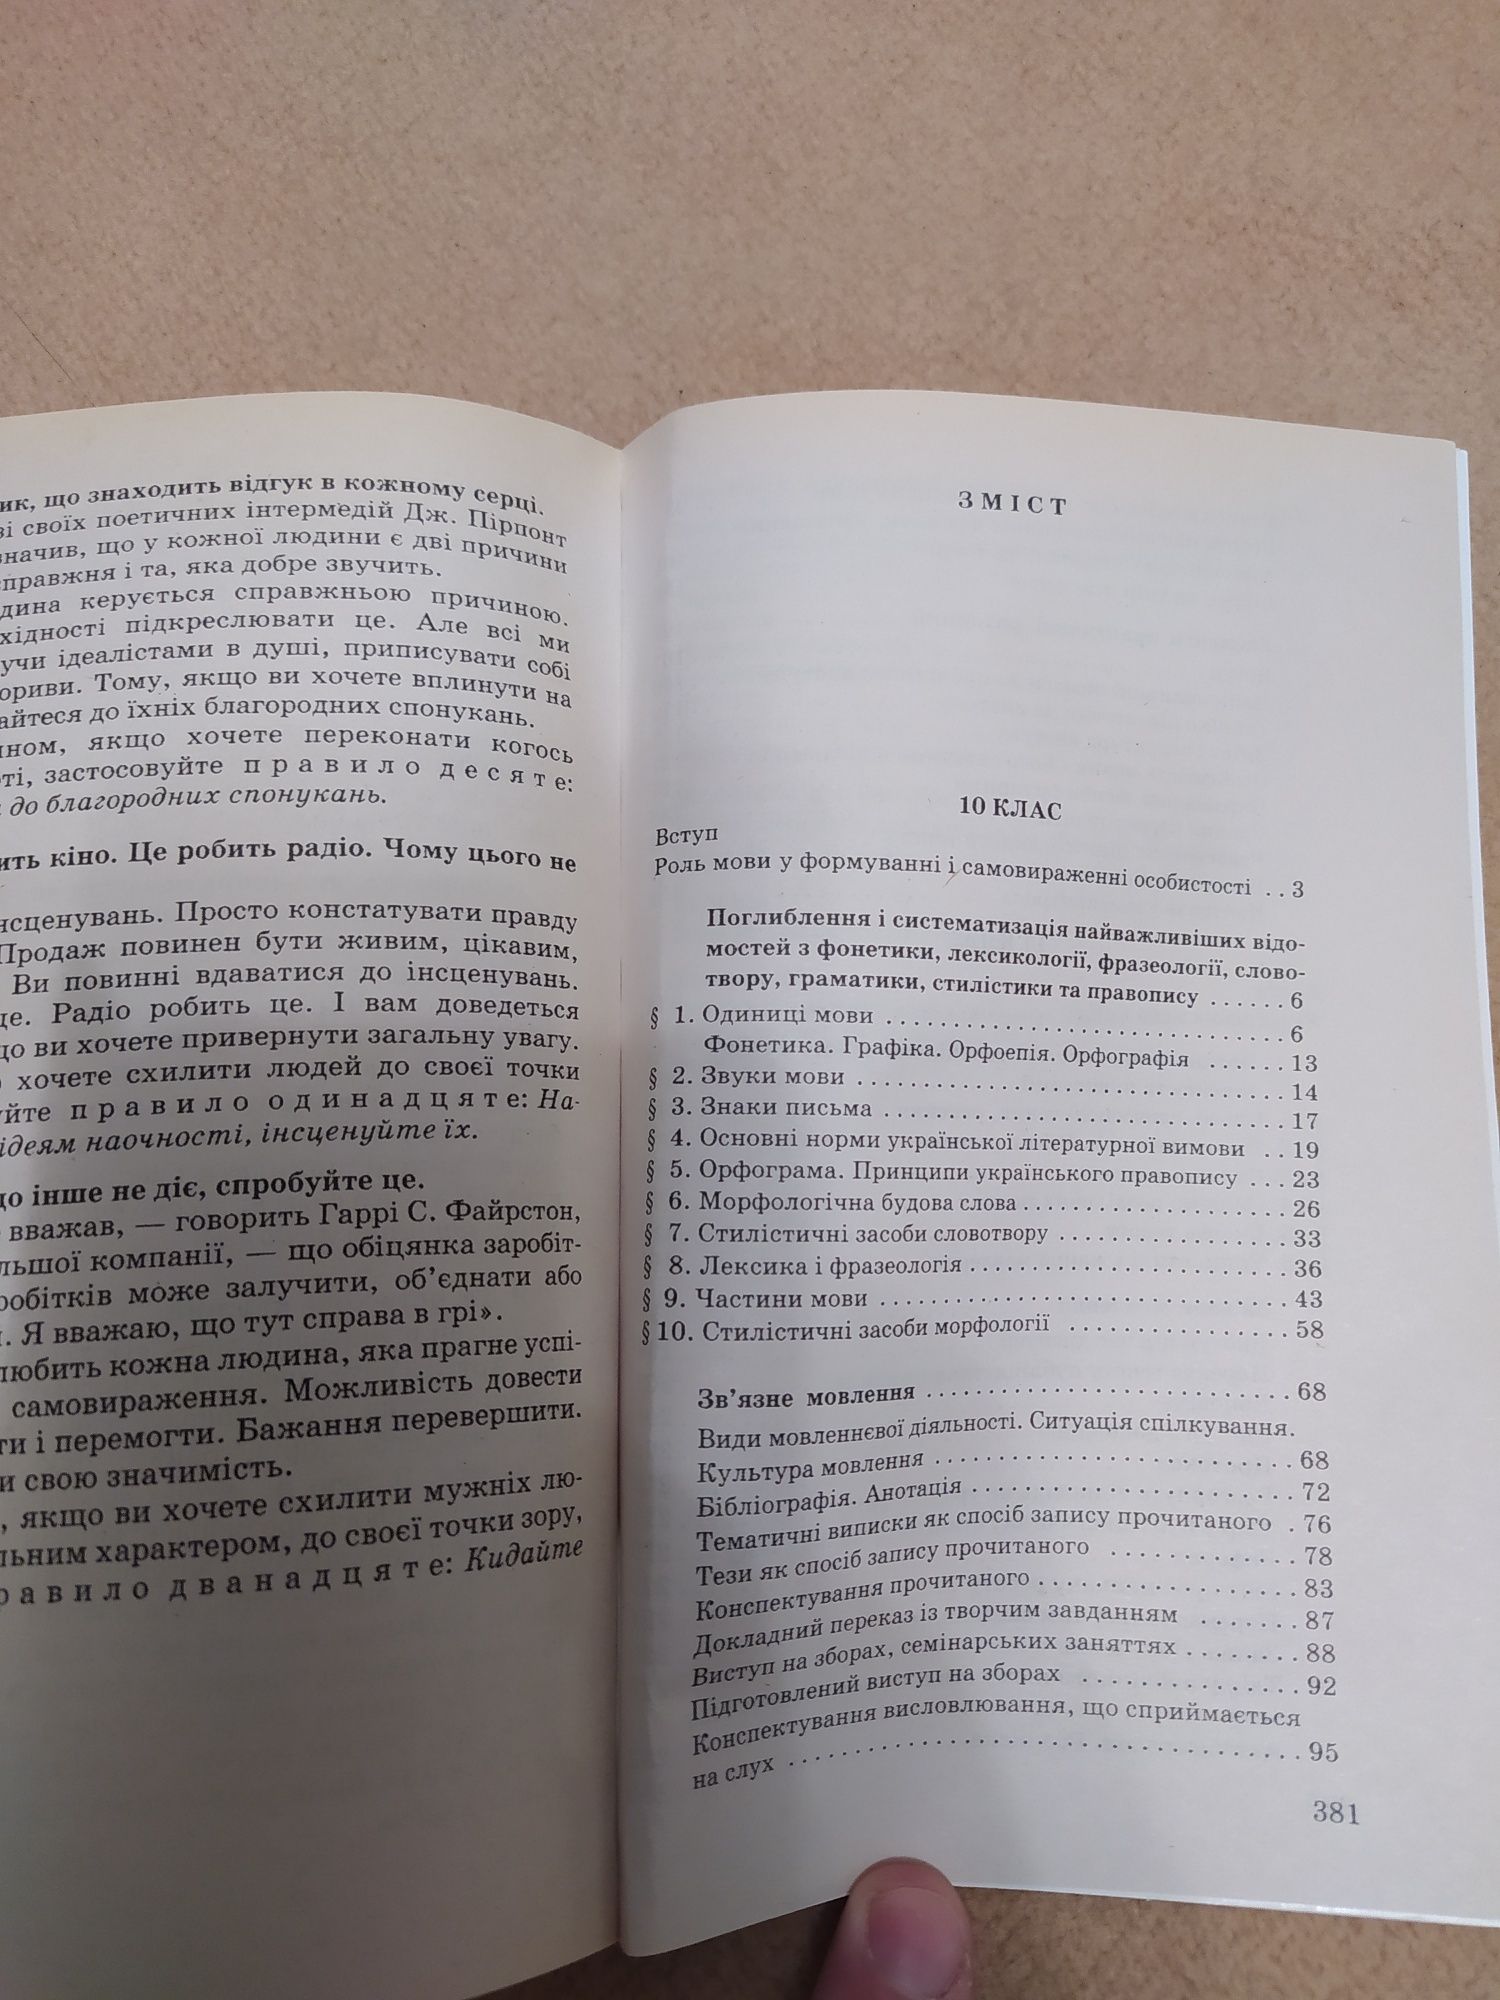 Українська мова 10-11 клас